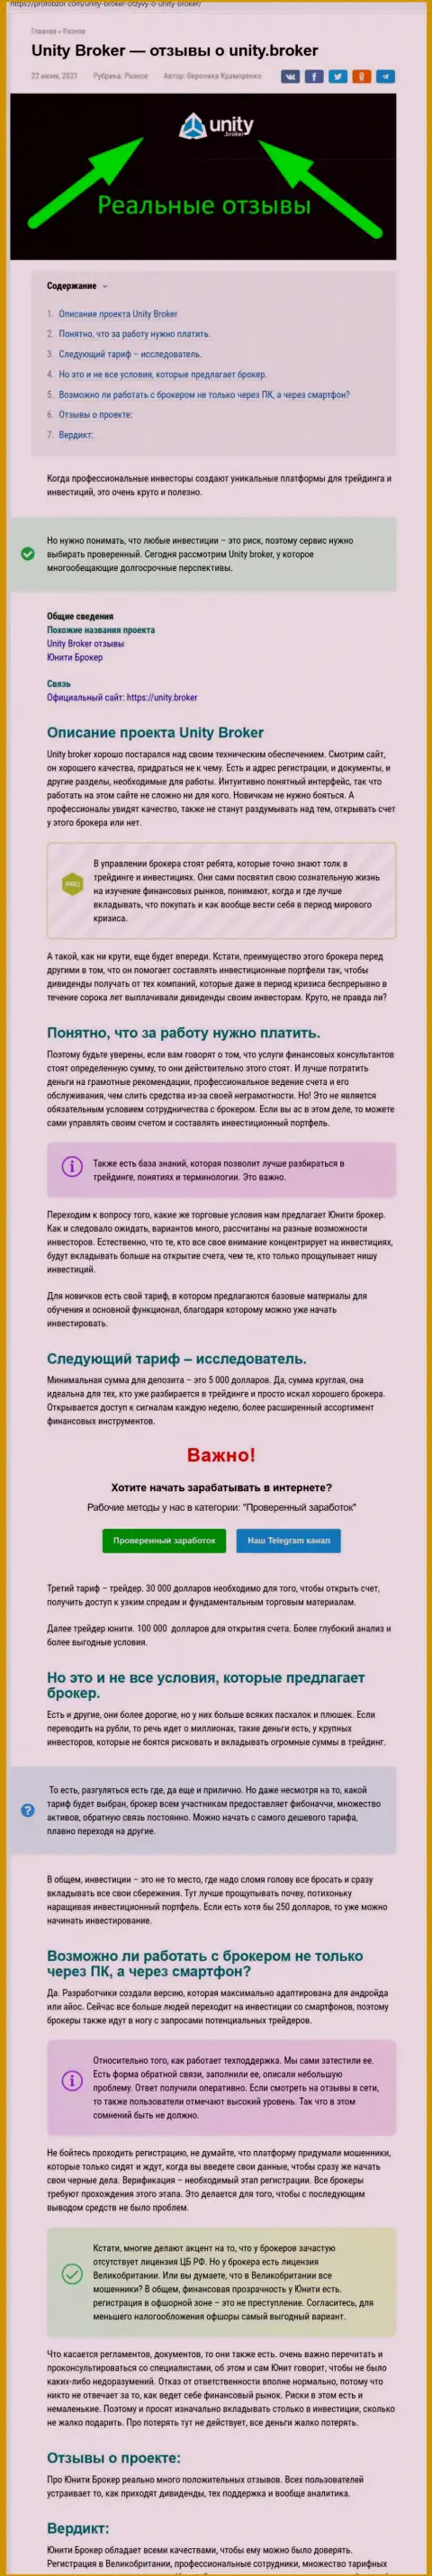 Обзор ФОРЕКС-дилинговой организации Юнити Брокер на сервисе профобзор ком